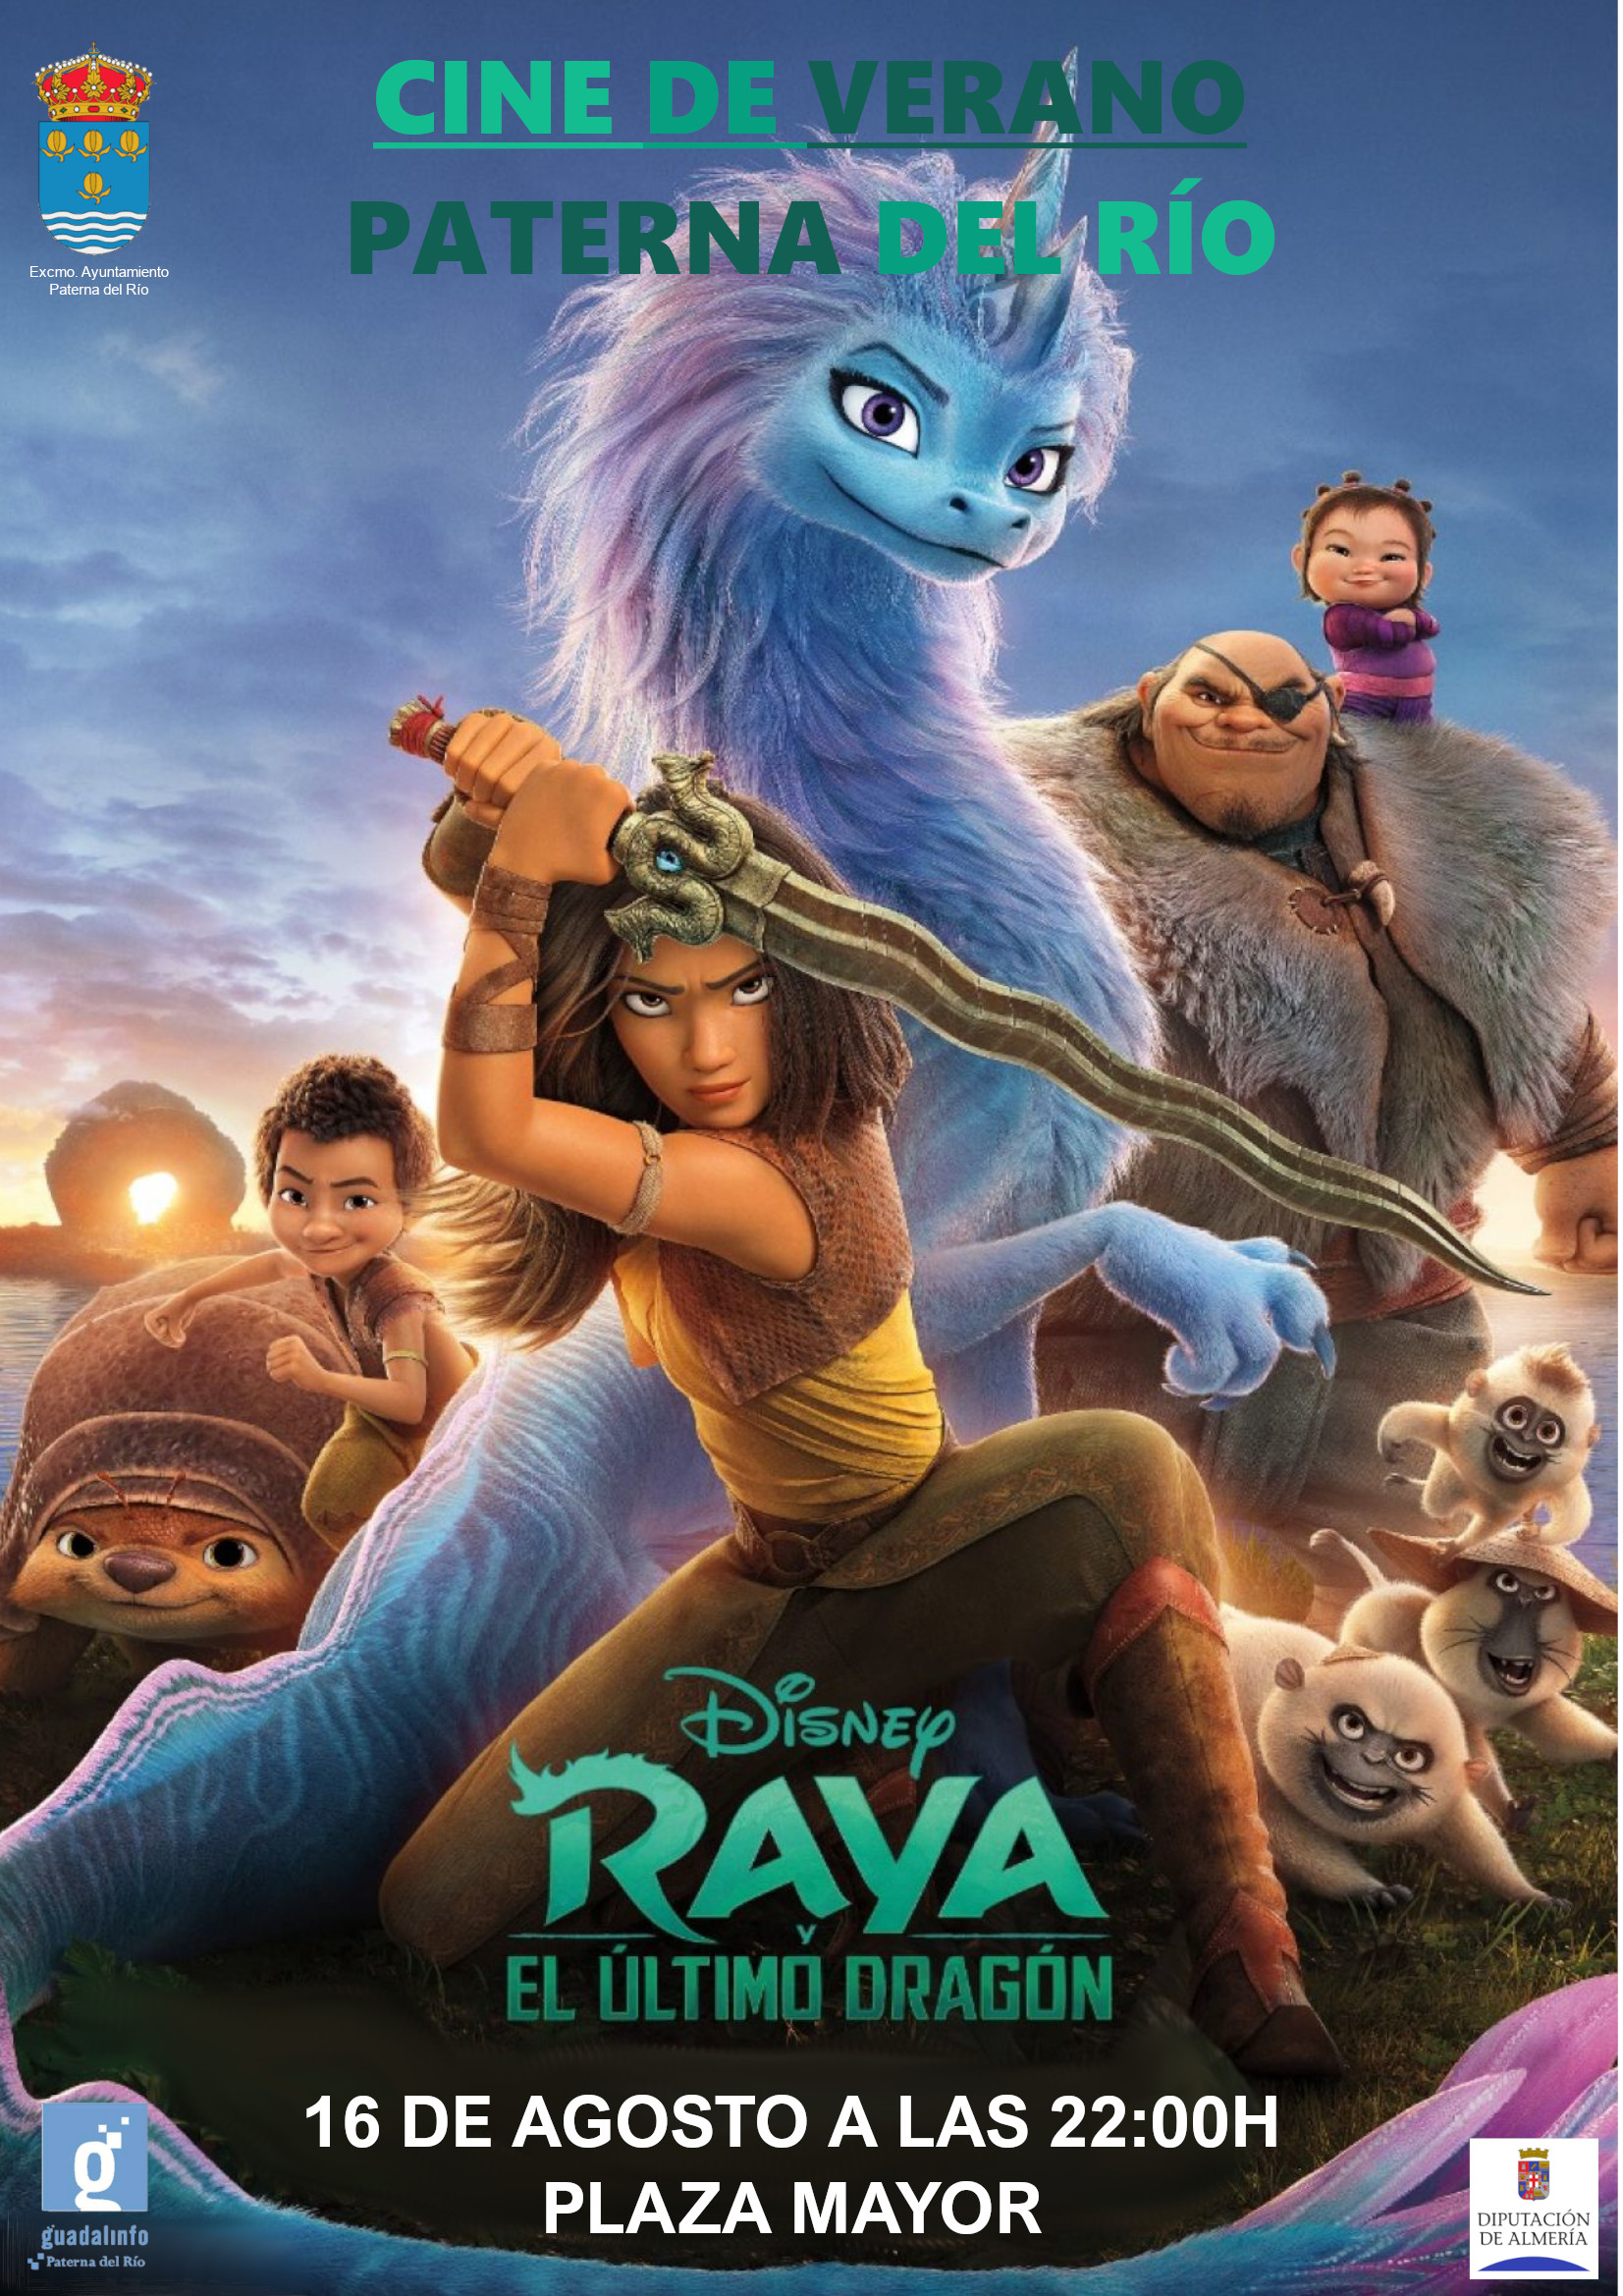 Cartel publicidad cine de verano Raya